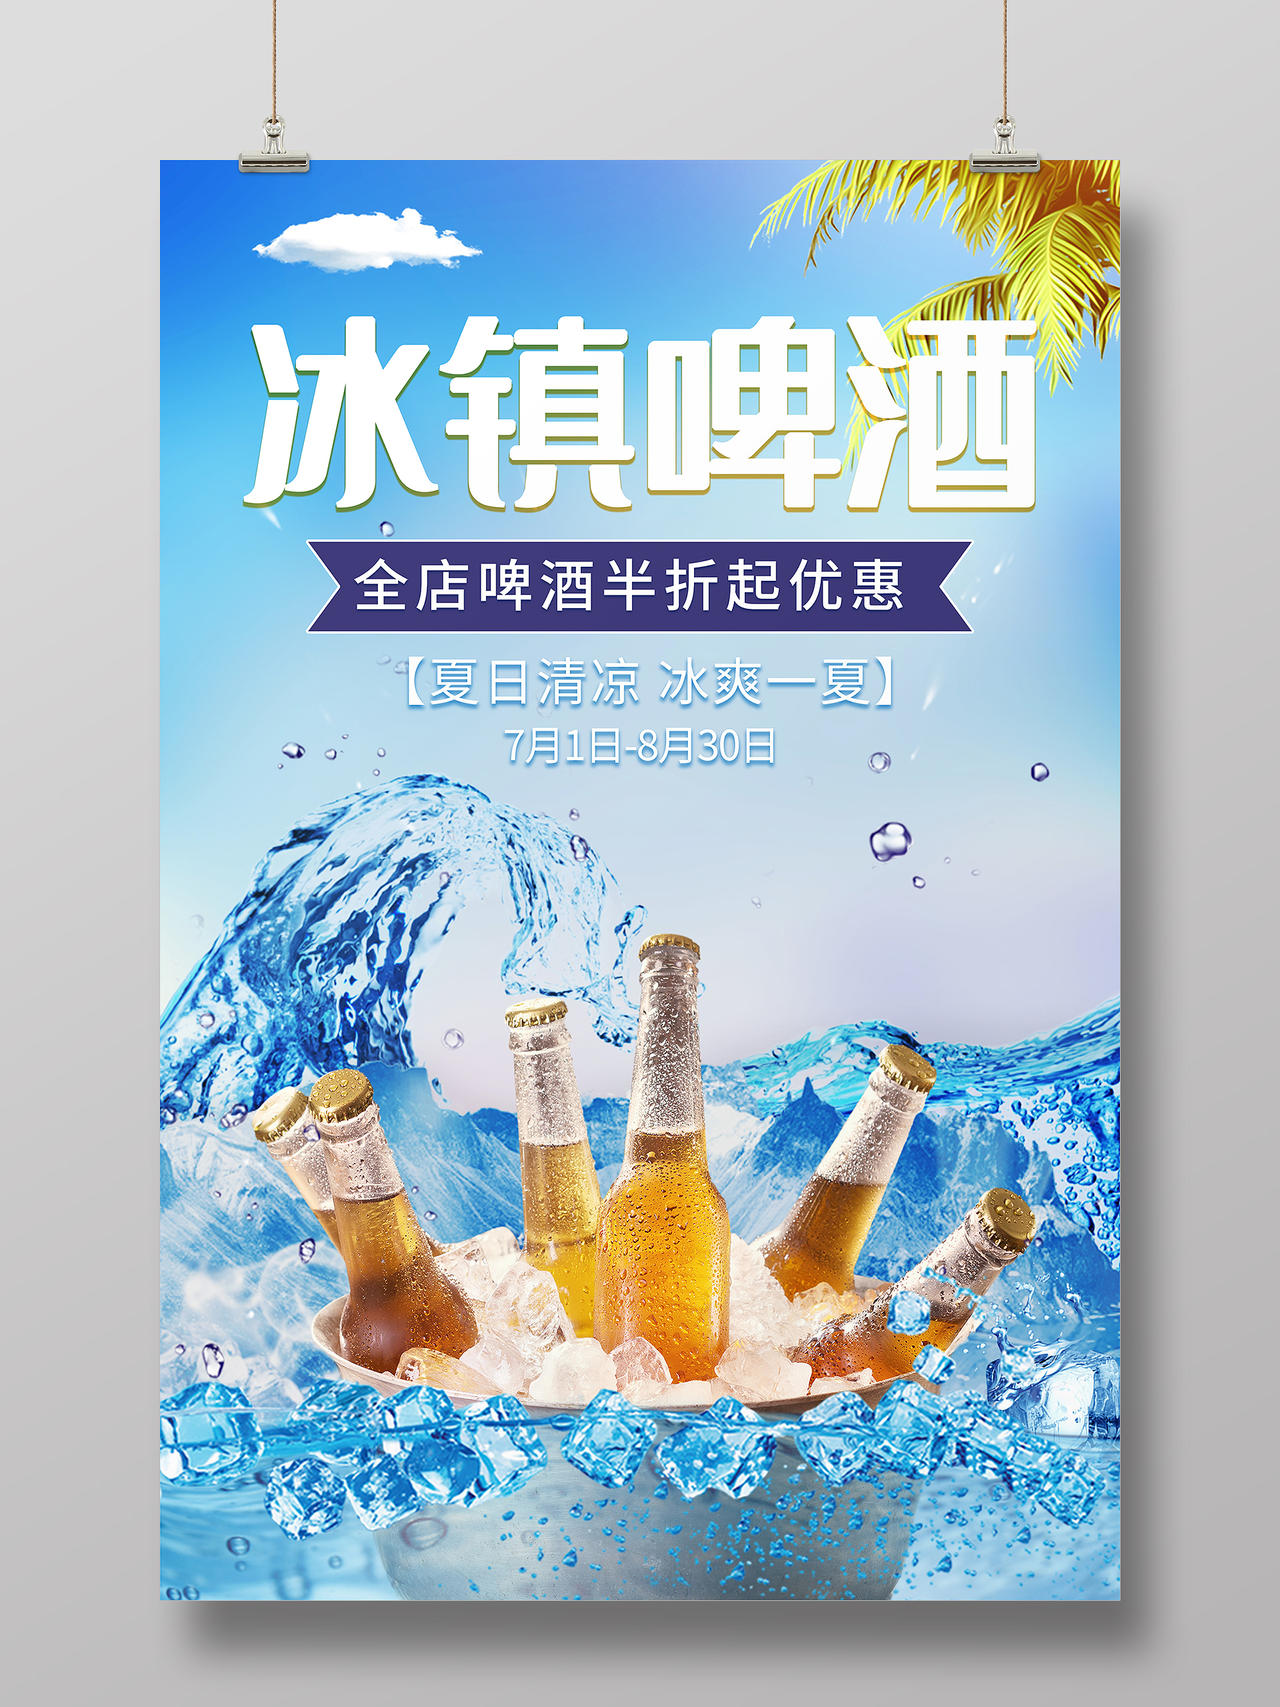 蓝色水花冰块背景夏日夏季冰镇啤酒优惠活动海报